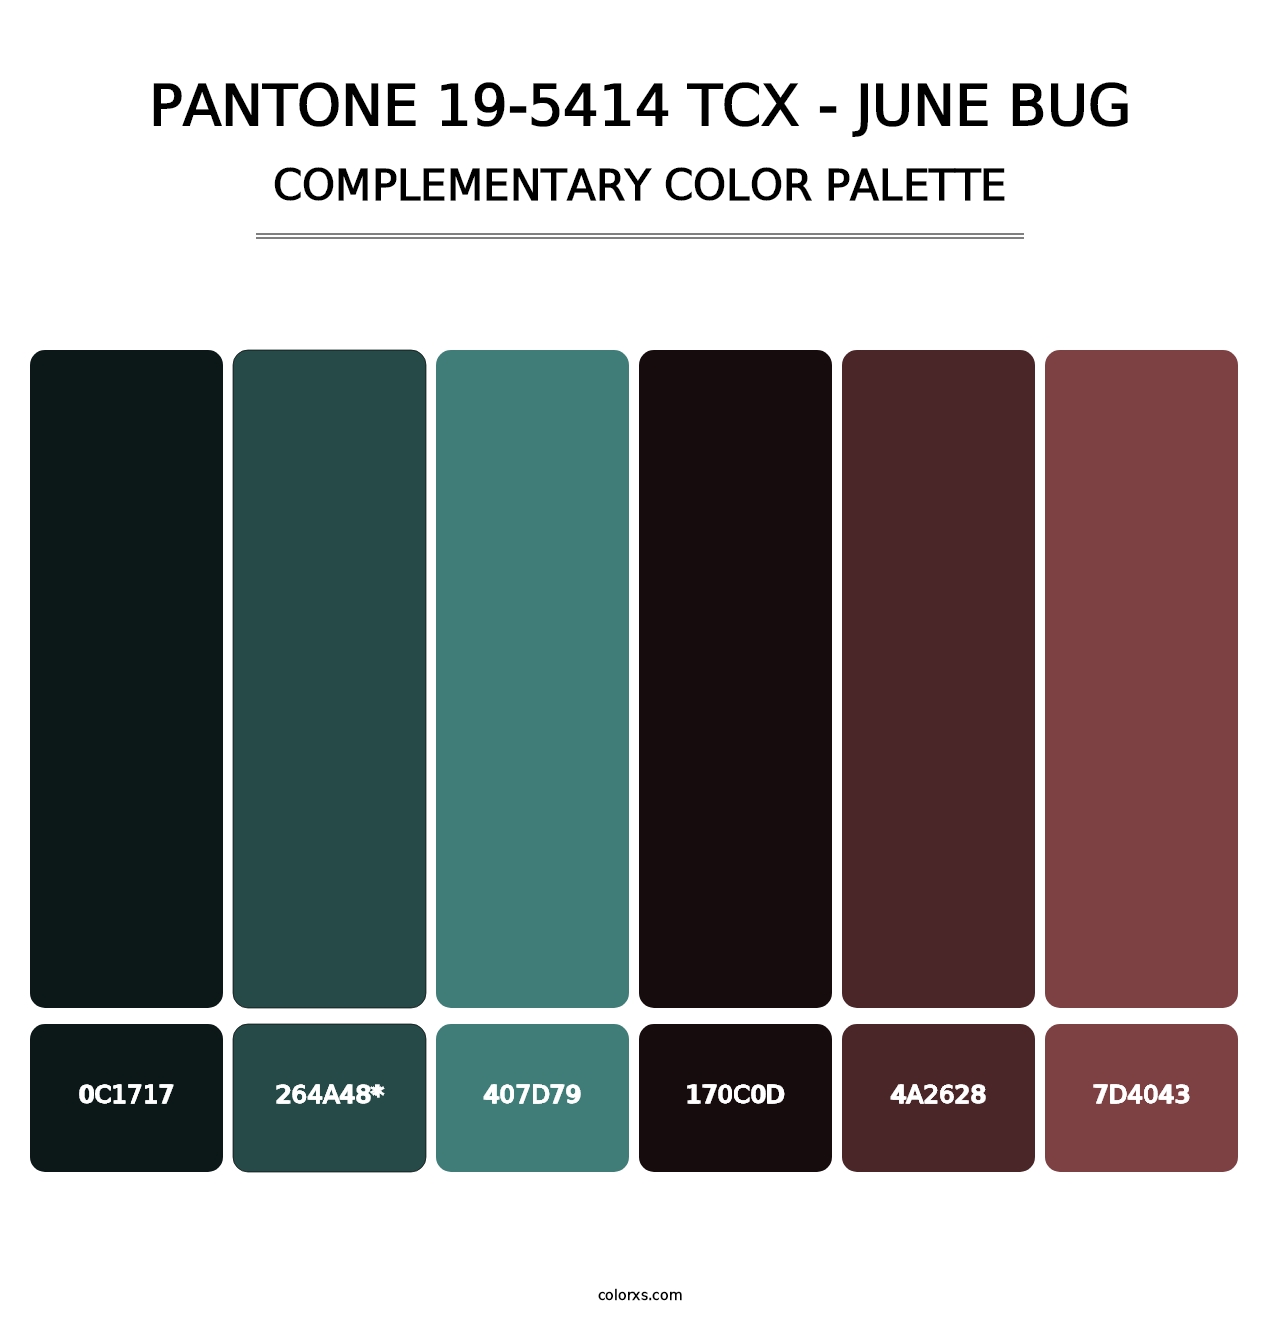 PANTONE 19-5414 TCX - June Bug - Complementary Color Palette